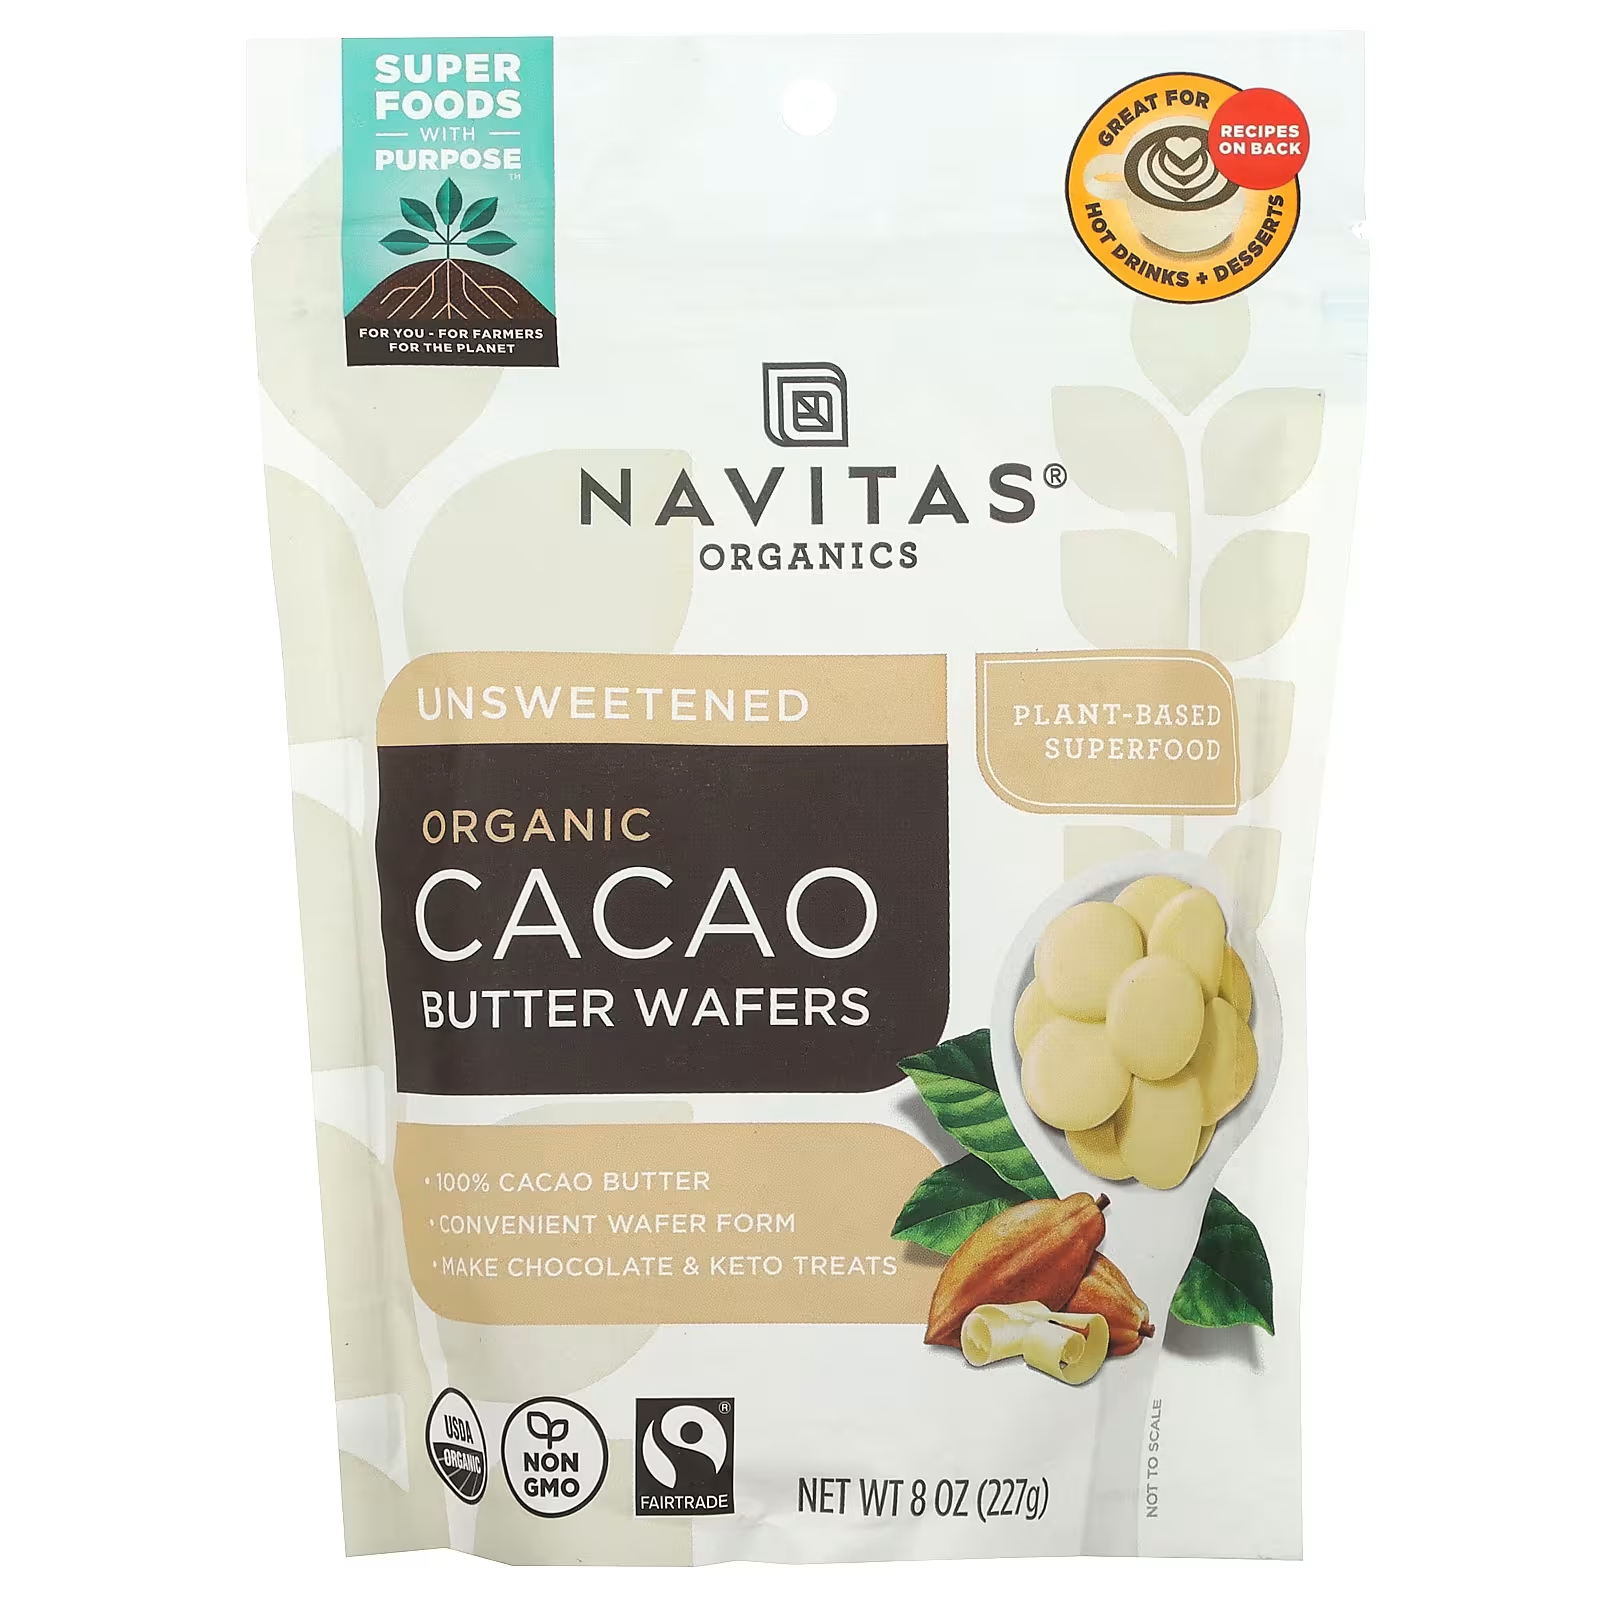 Navitas Organics Органические вафли с маслом какао, несладкие, 8 унций (227 г) navitas organics смесь антиоксидантов органическое какао годжи асаи 227 г 8 унций